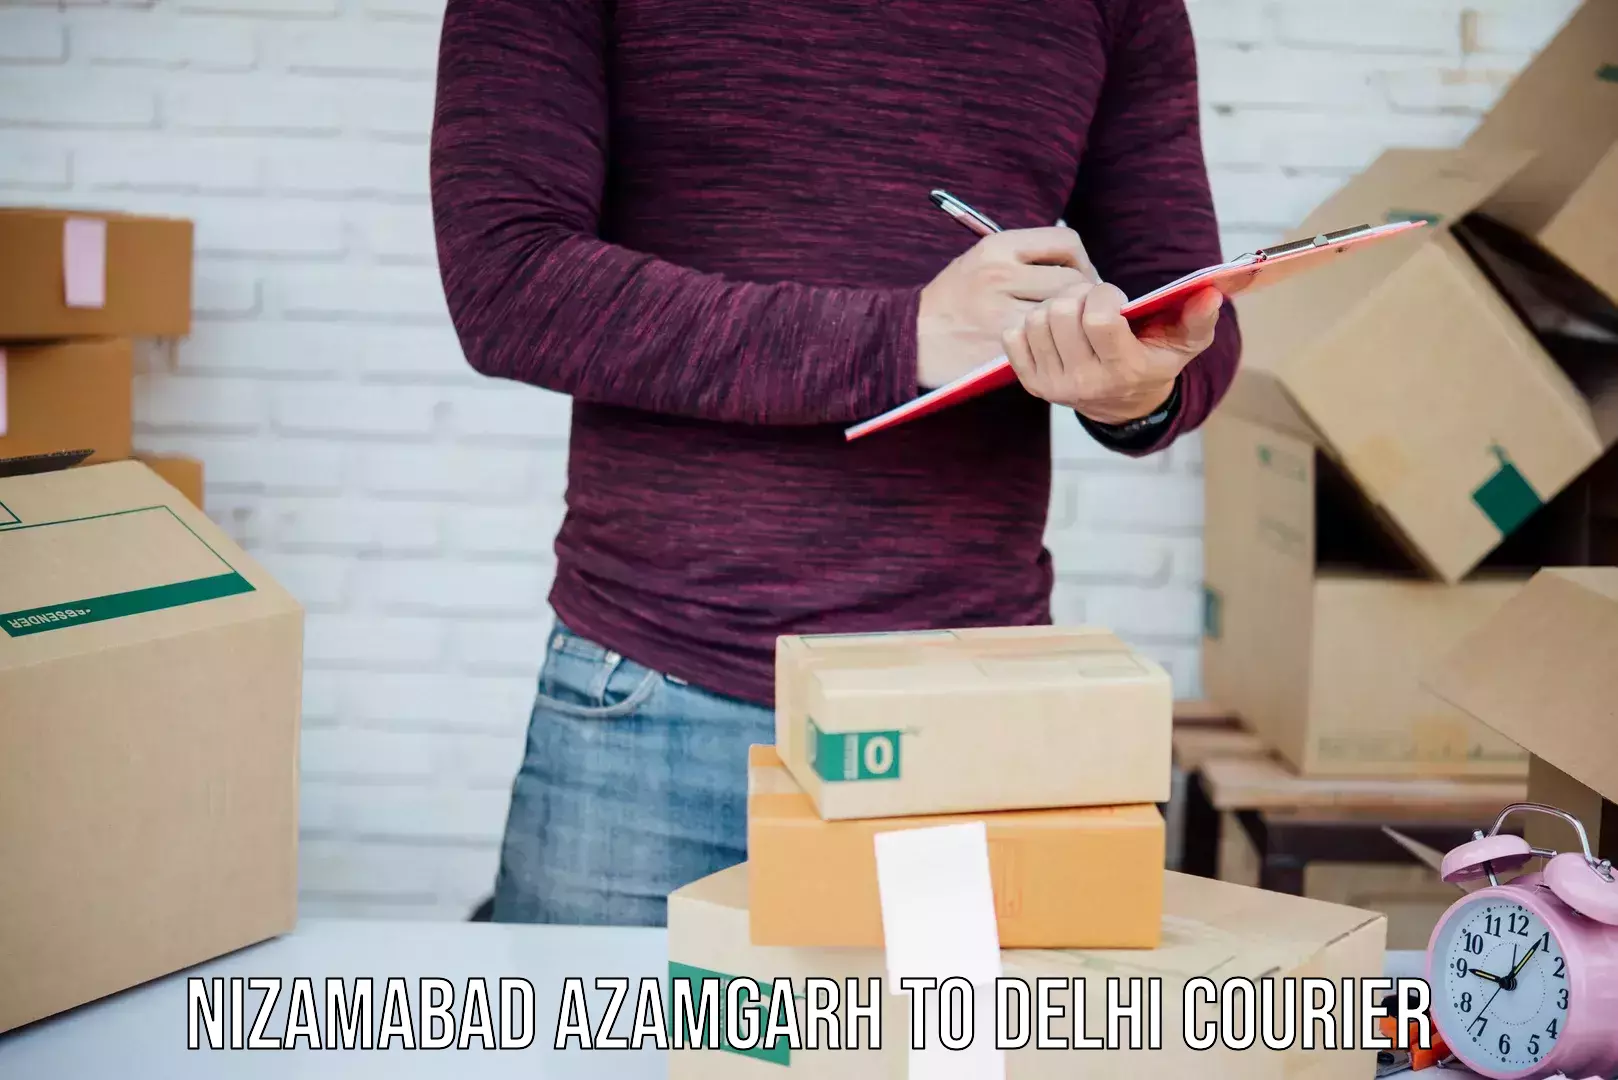 Affordable parcel rates Nizamabad Azamgarh to Jamia Millia Islamia New Delhi